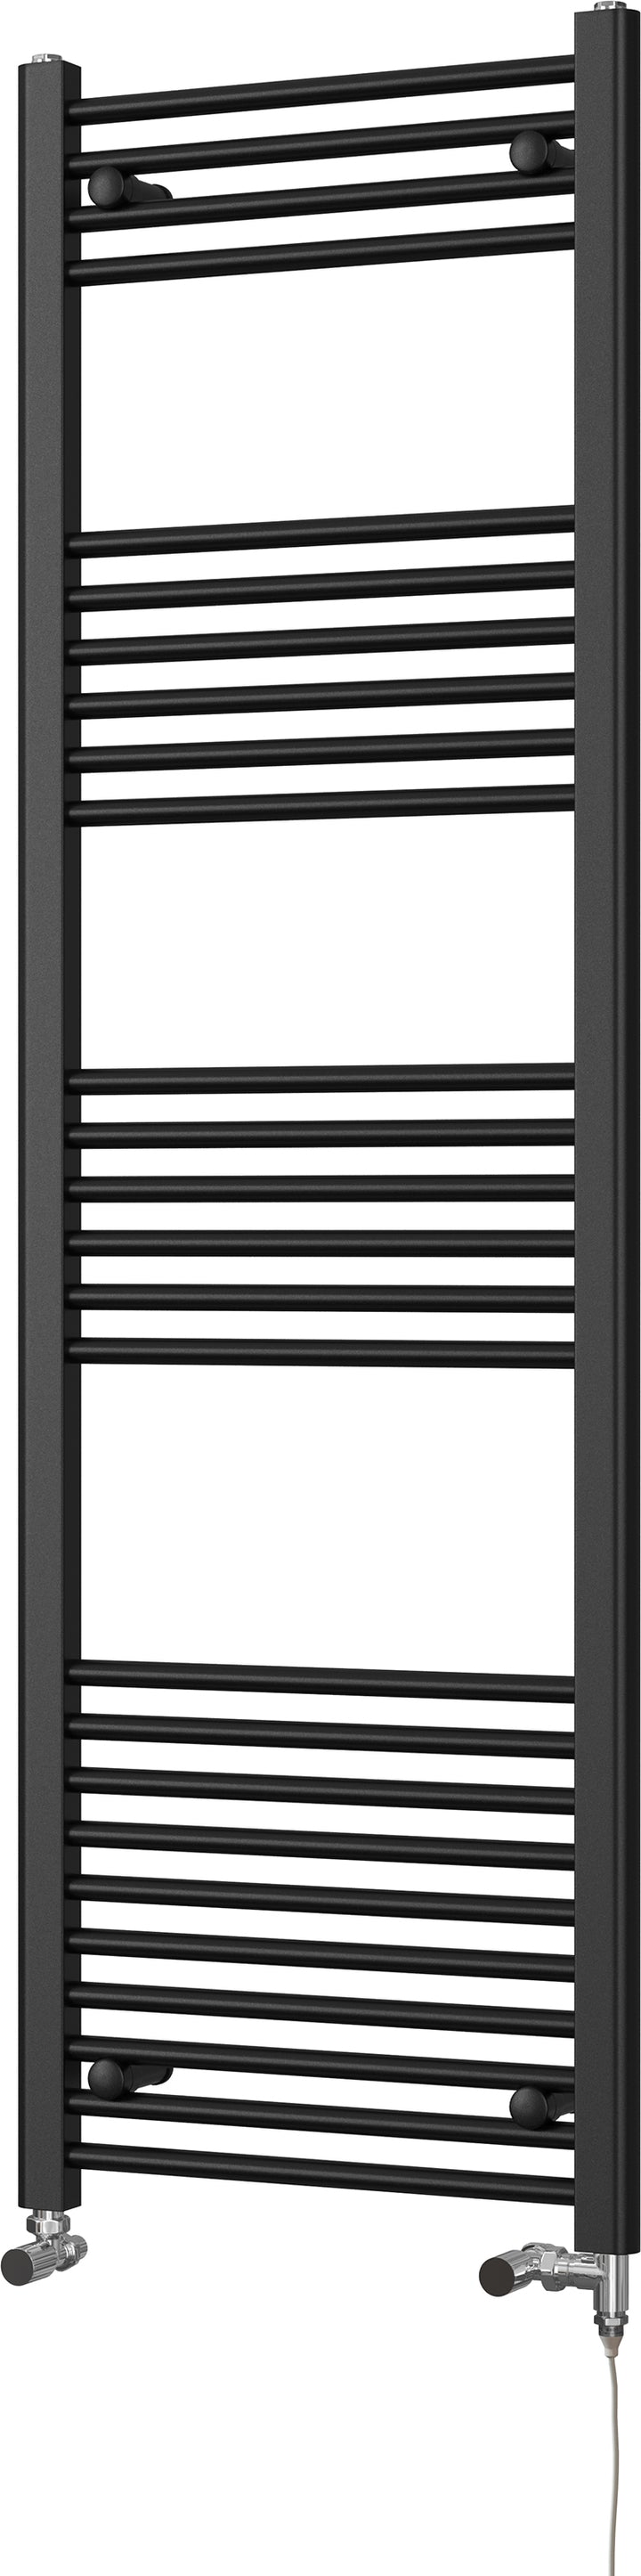 Zennor - Black Dual Fuel Towel Rail H1600mm x W500mm Standard - Straight